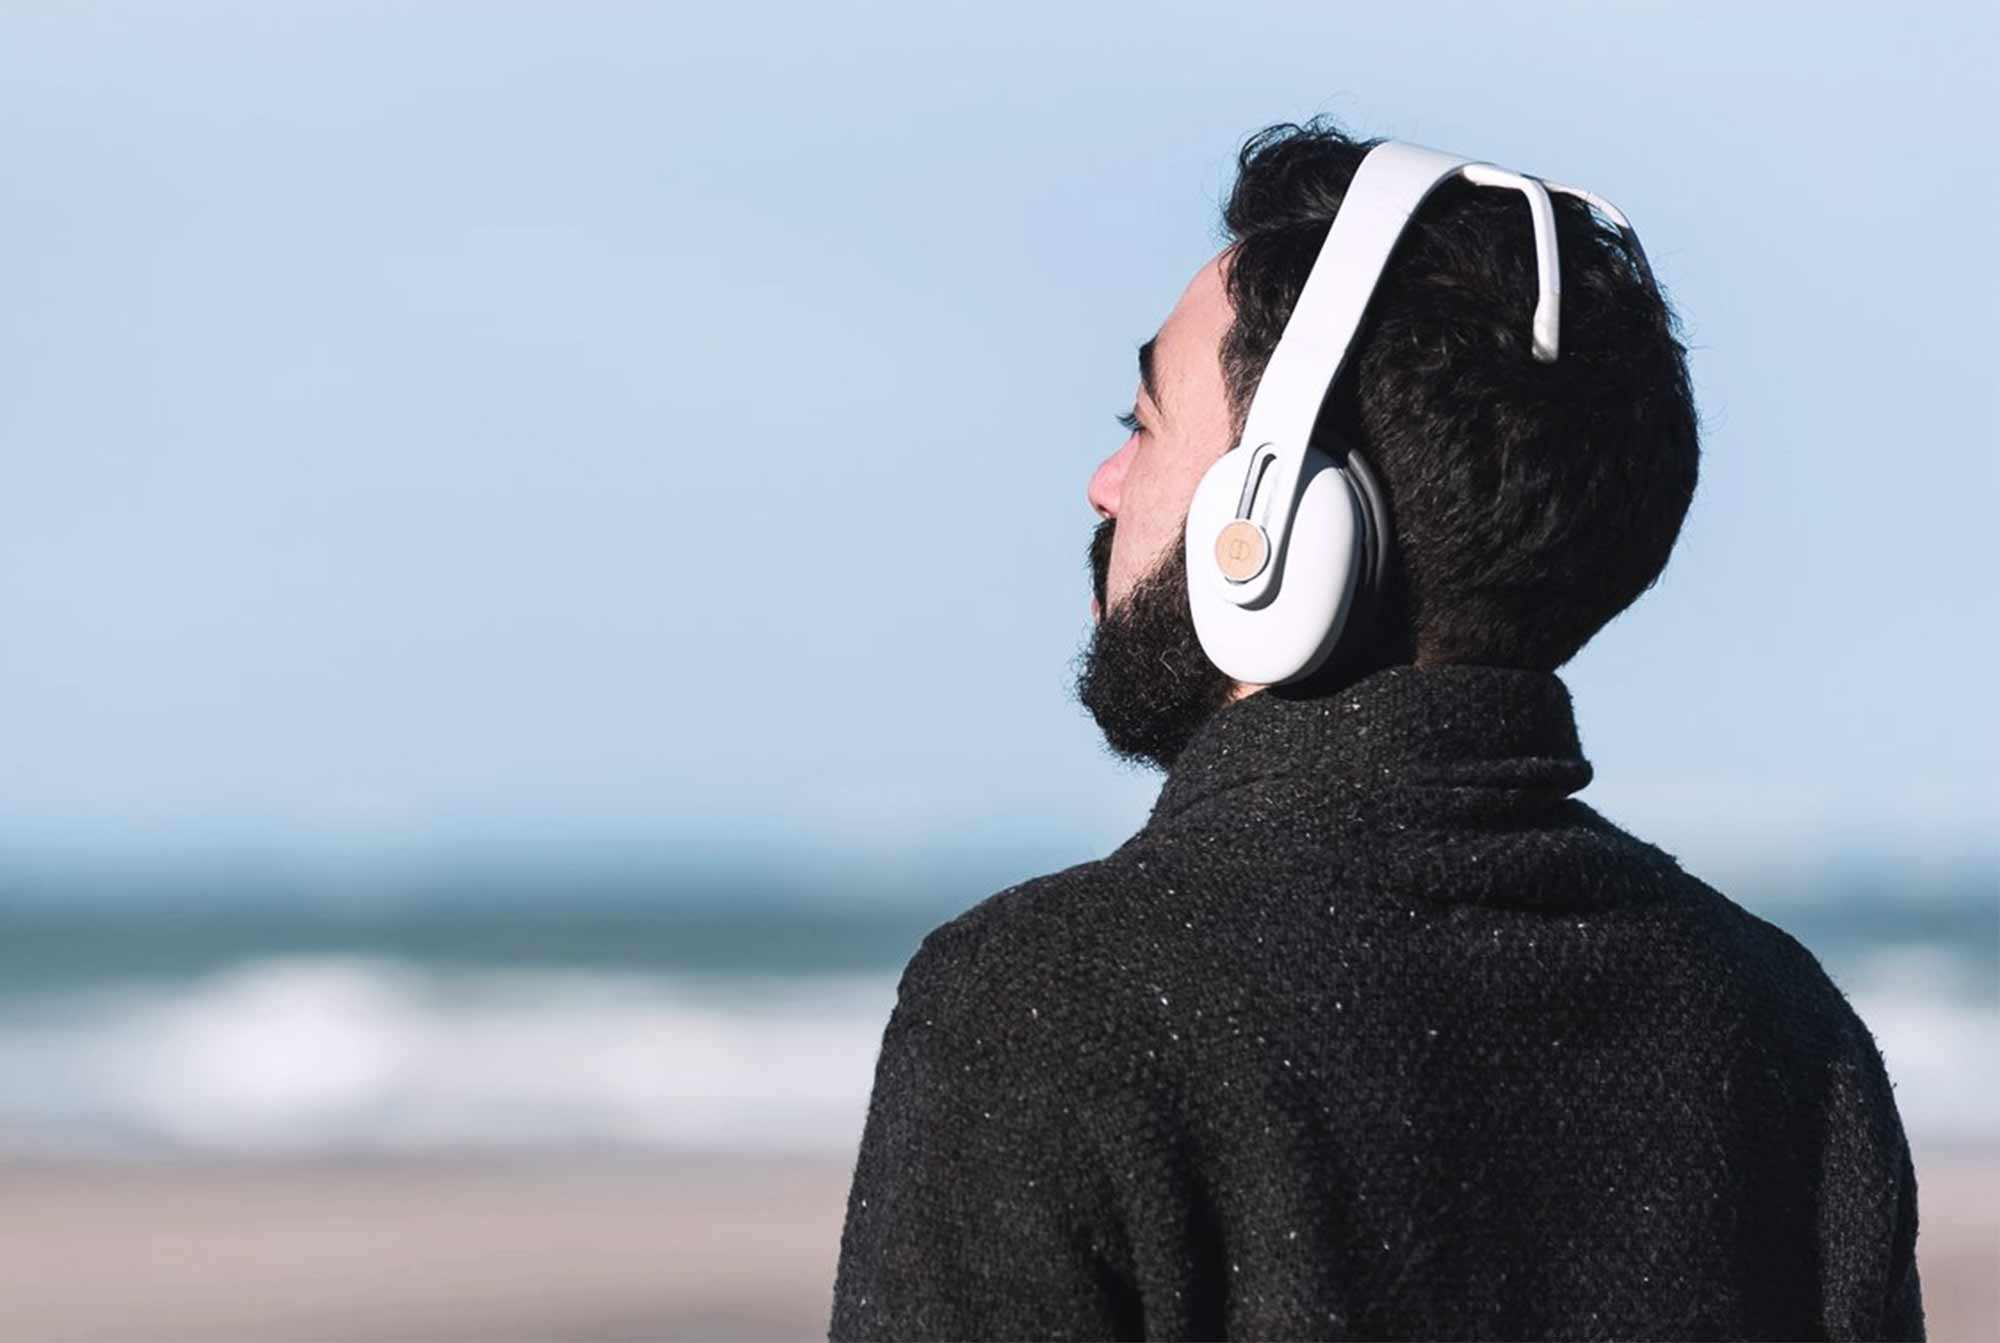 Start: Esses fones de ouvido vão ensinar você a diminuir o stress